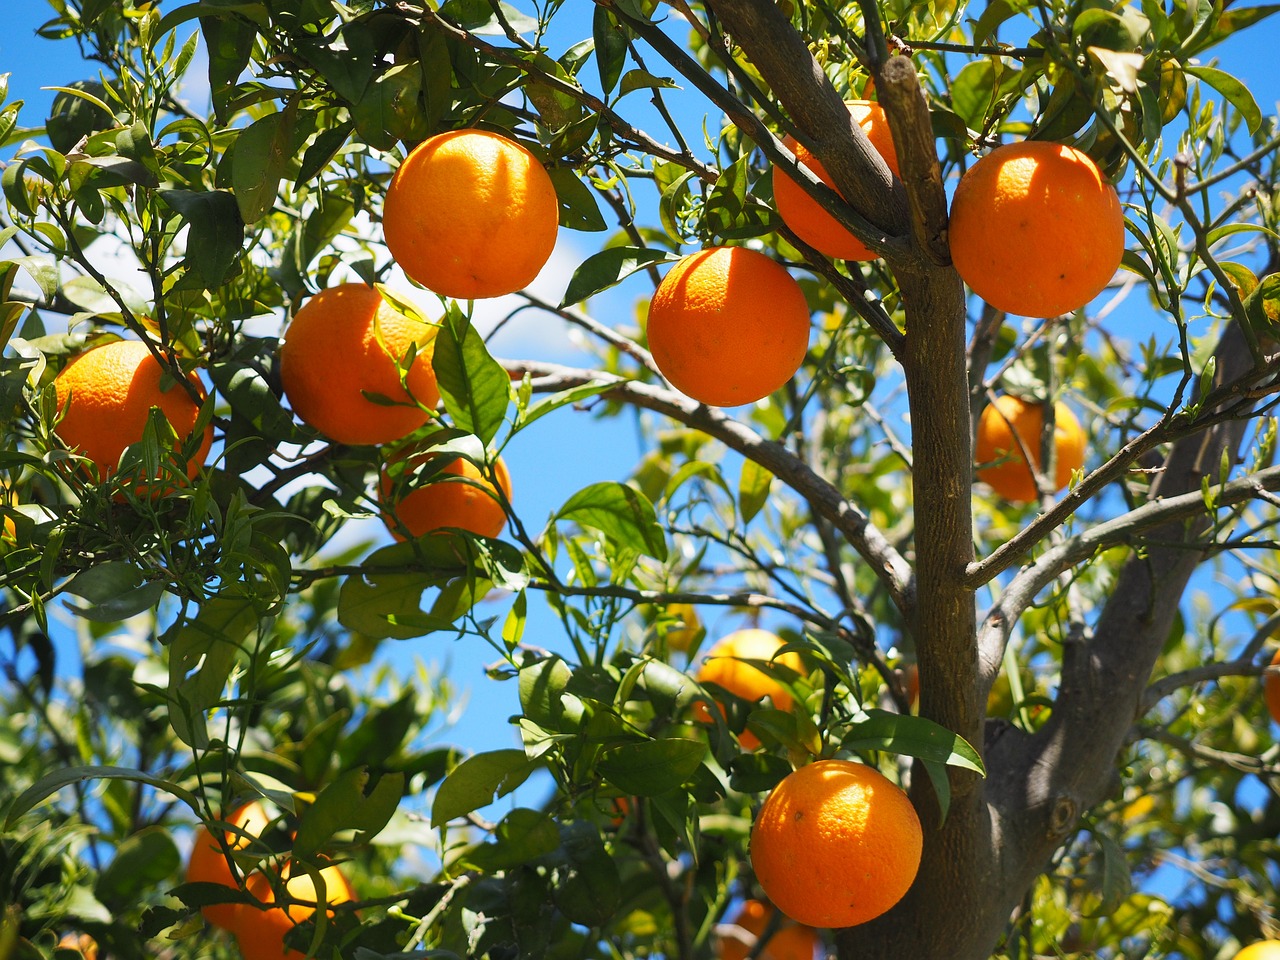 Produtores de citrinos no Algarve anteveem quebra de produção devido à seca